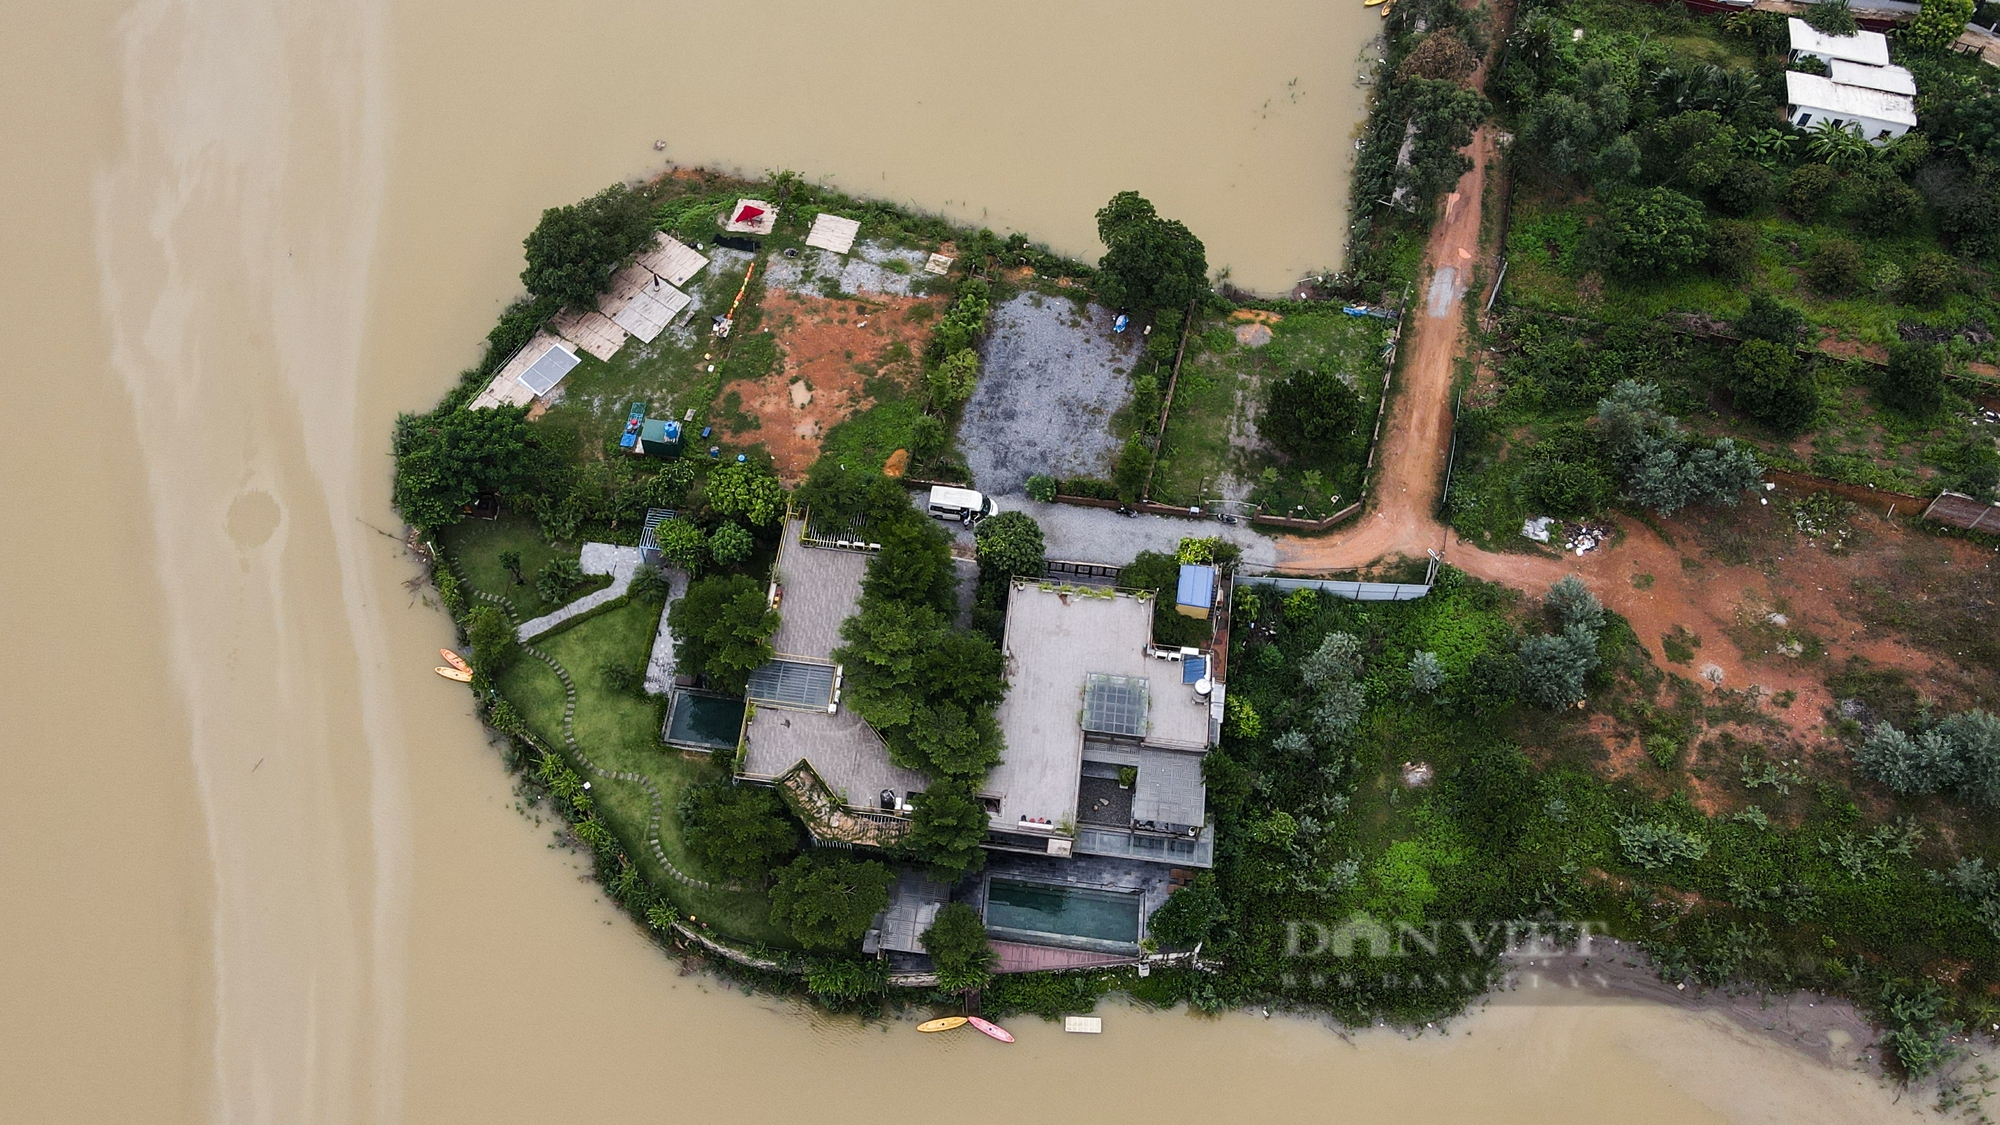 Hồ Đồng Đò huyện Sóc Sơn bị vay kín bởi homestay, khu nghỉ dưỡng - Ảnh 7.